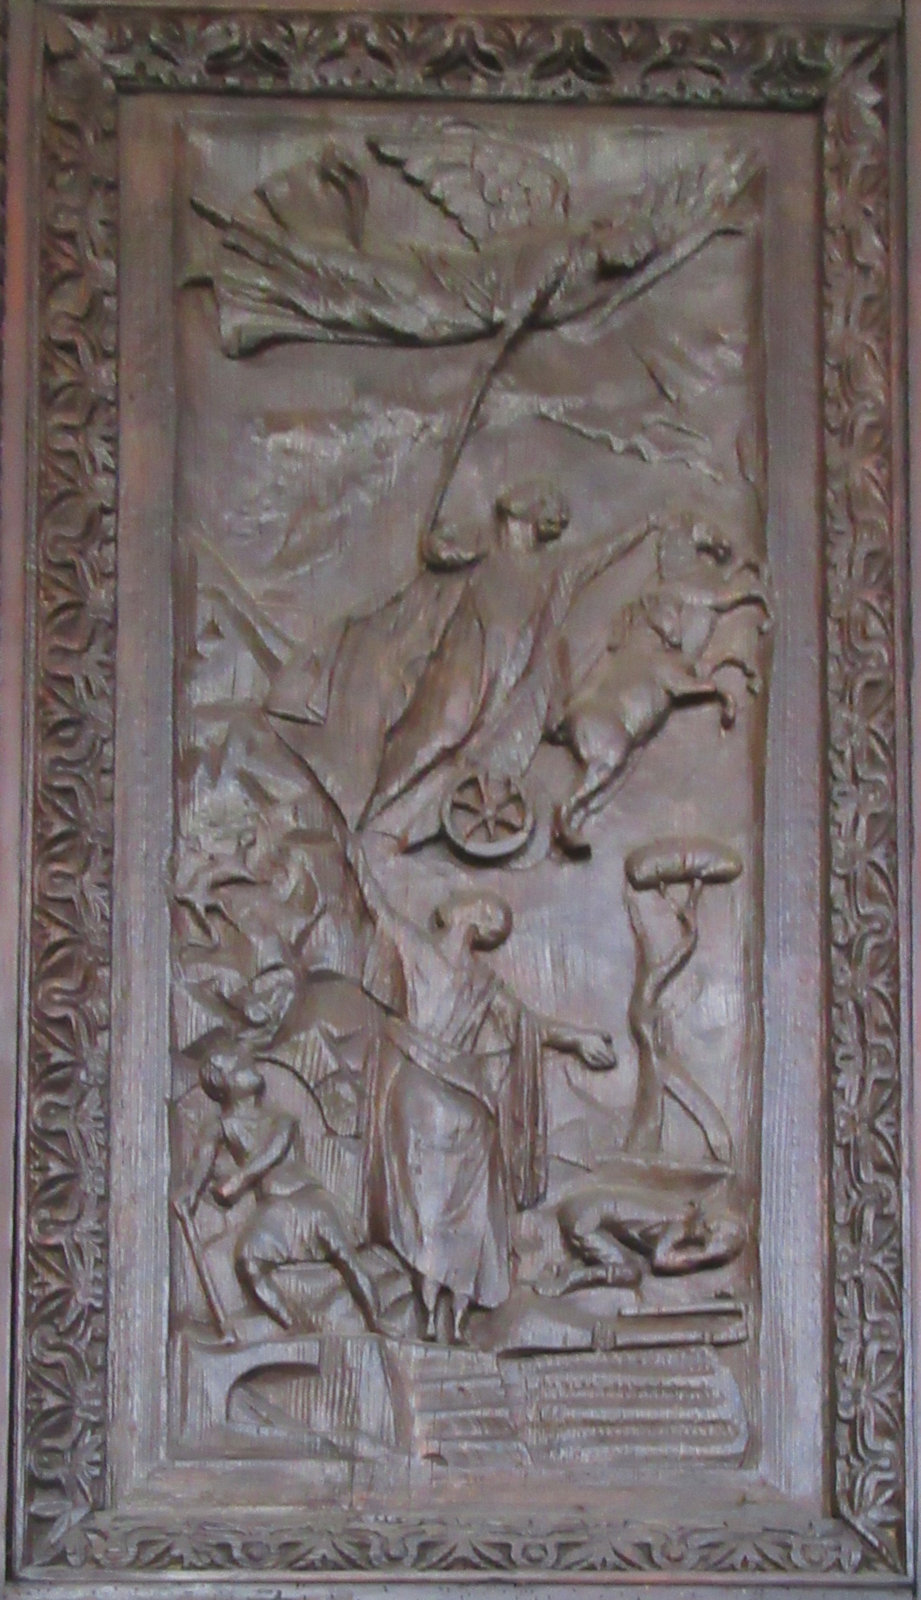 Elia' Himmelfahrt, 5. Jahrhundert, an der Tür der Kirche Santa Sabina in Rom